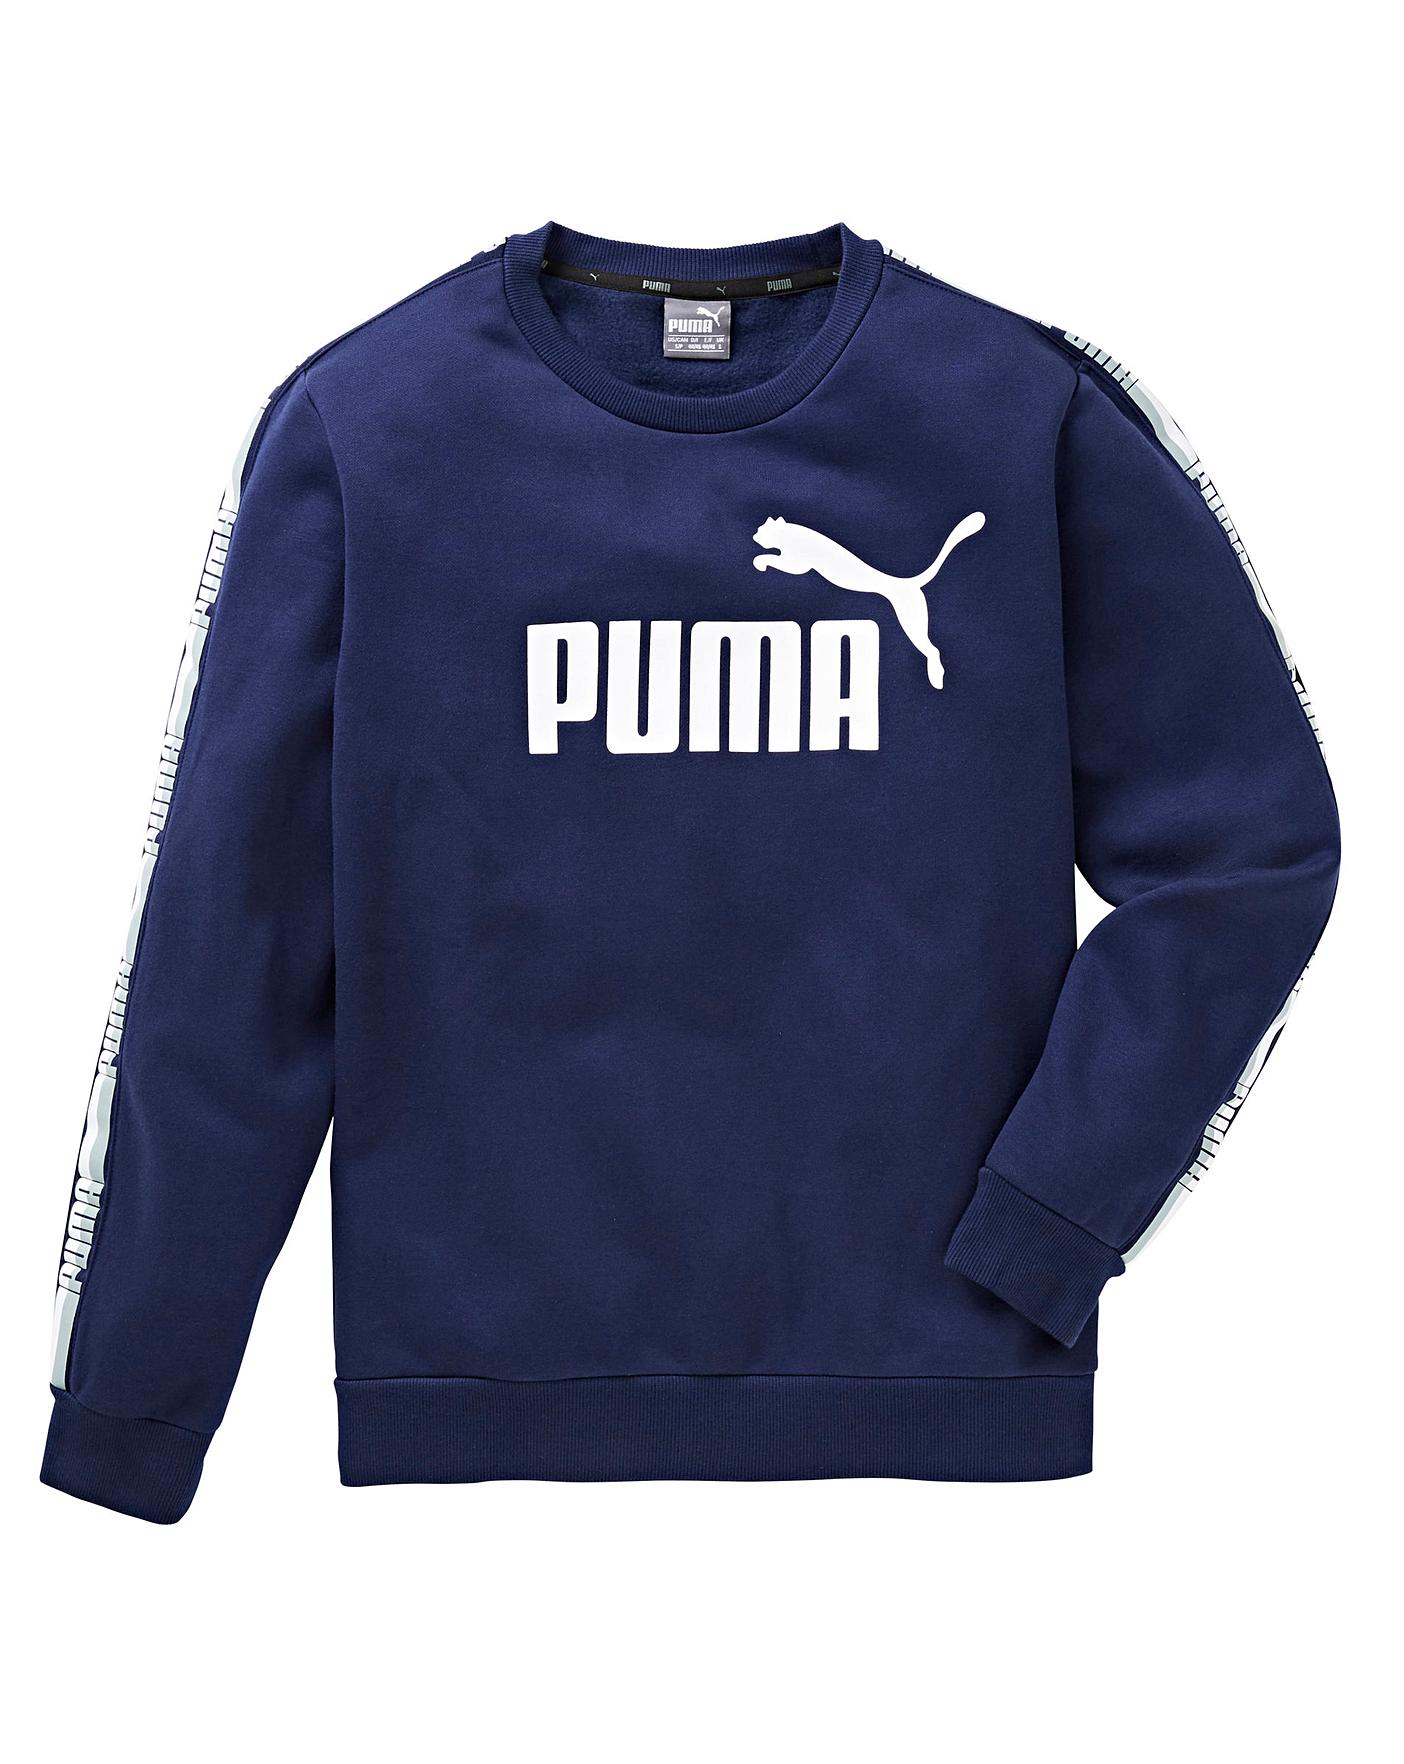 puma blue sweater